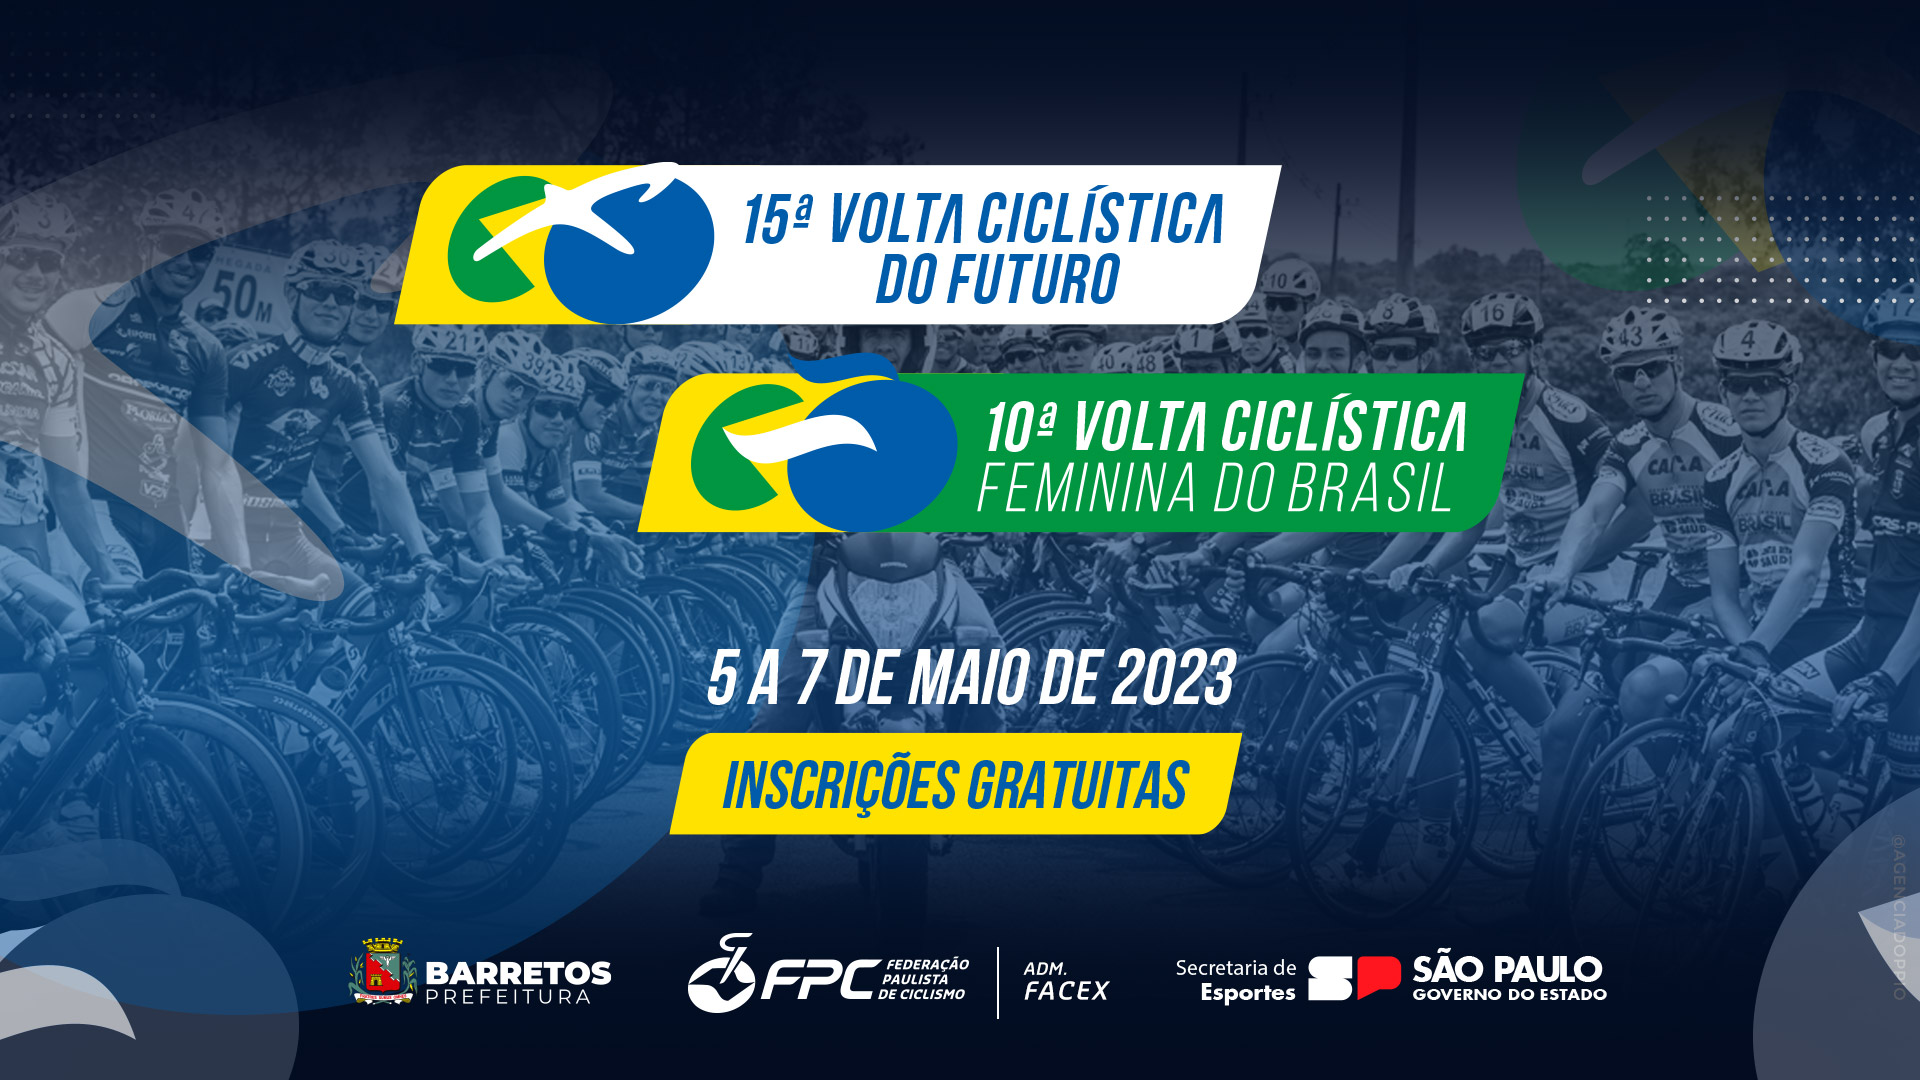 Agenda de Ciclismo (1 e 2 de abril de 2023) - Ciclismo, Desporto,  Competições e Classificações - Propedalar